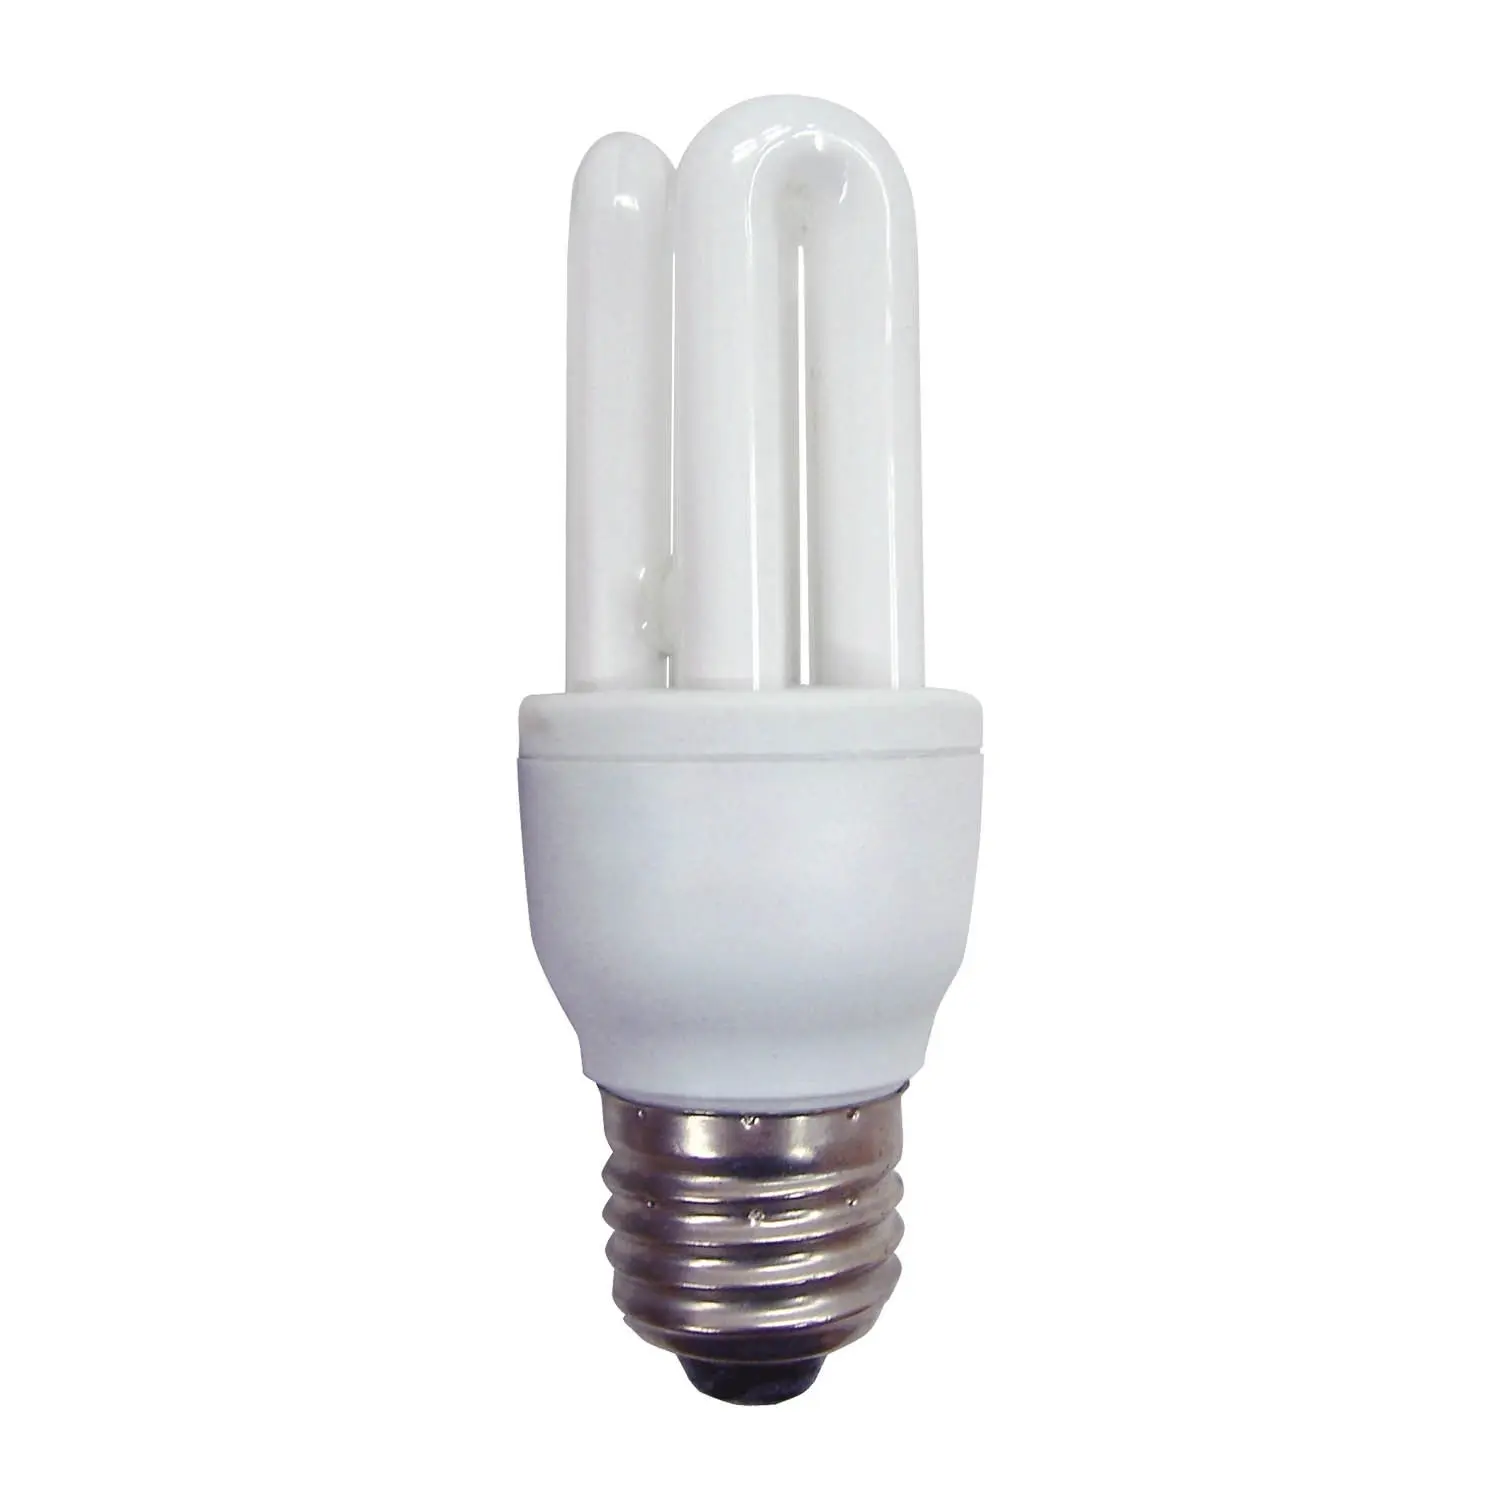 lampara bajo consumo 9w - Cuántos voltios tiene una bombilla de bajo consumo